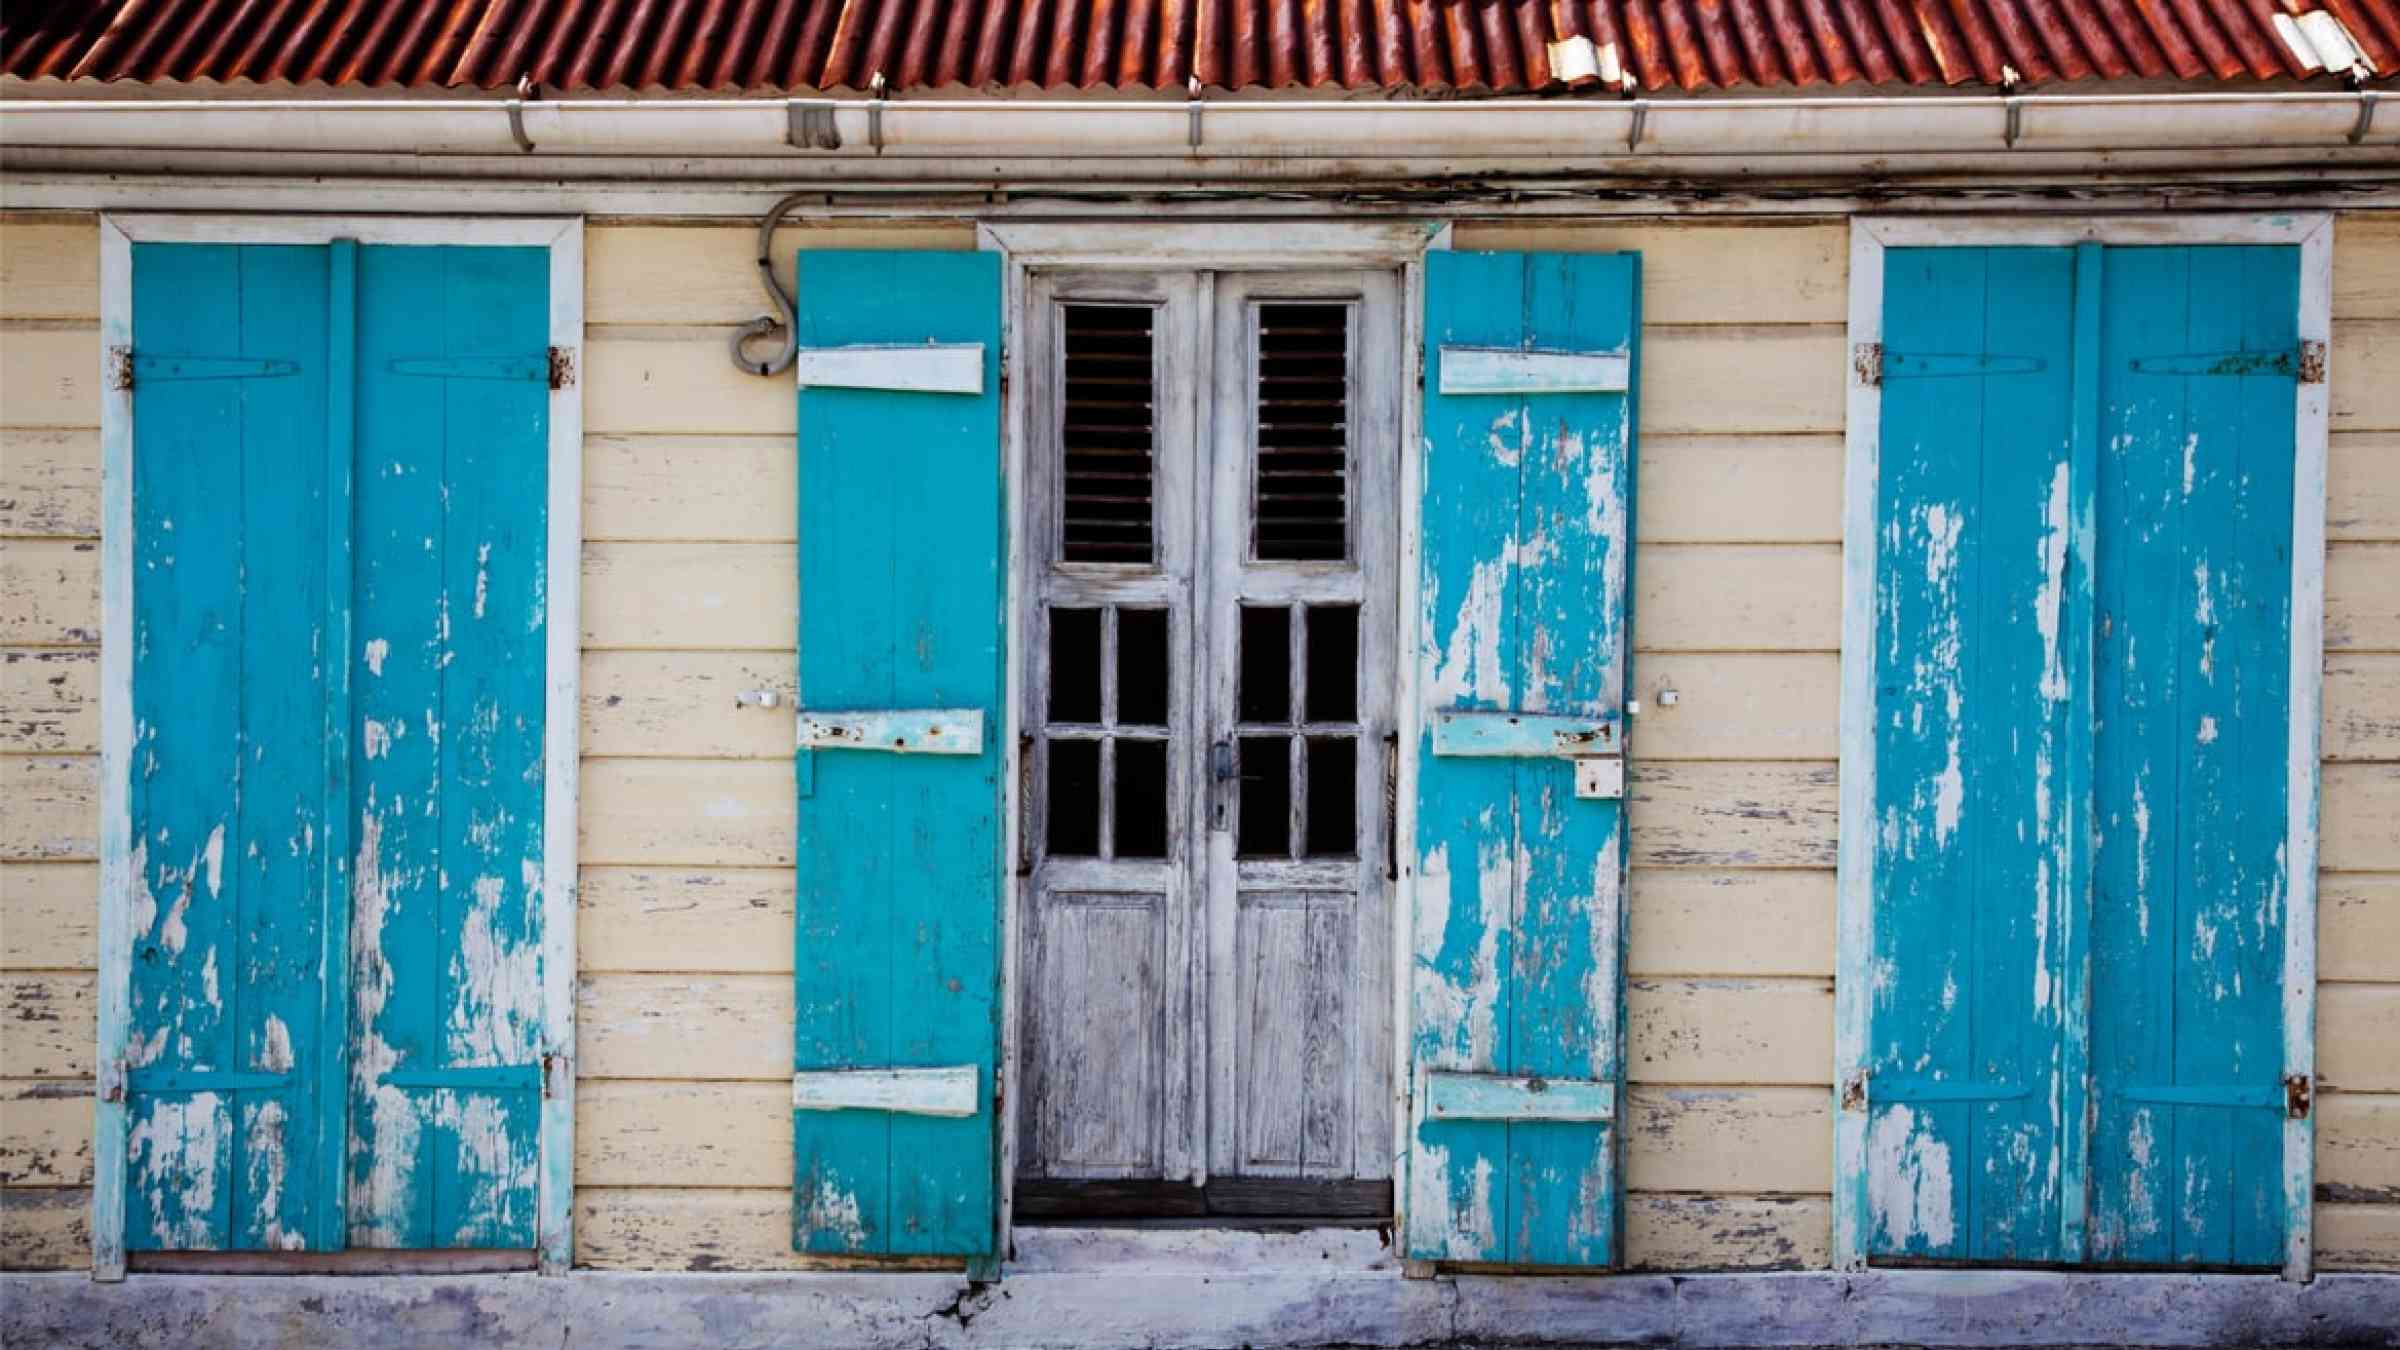 Coloured windows of a Caribbean house